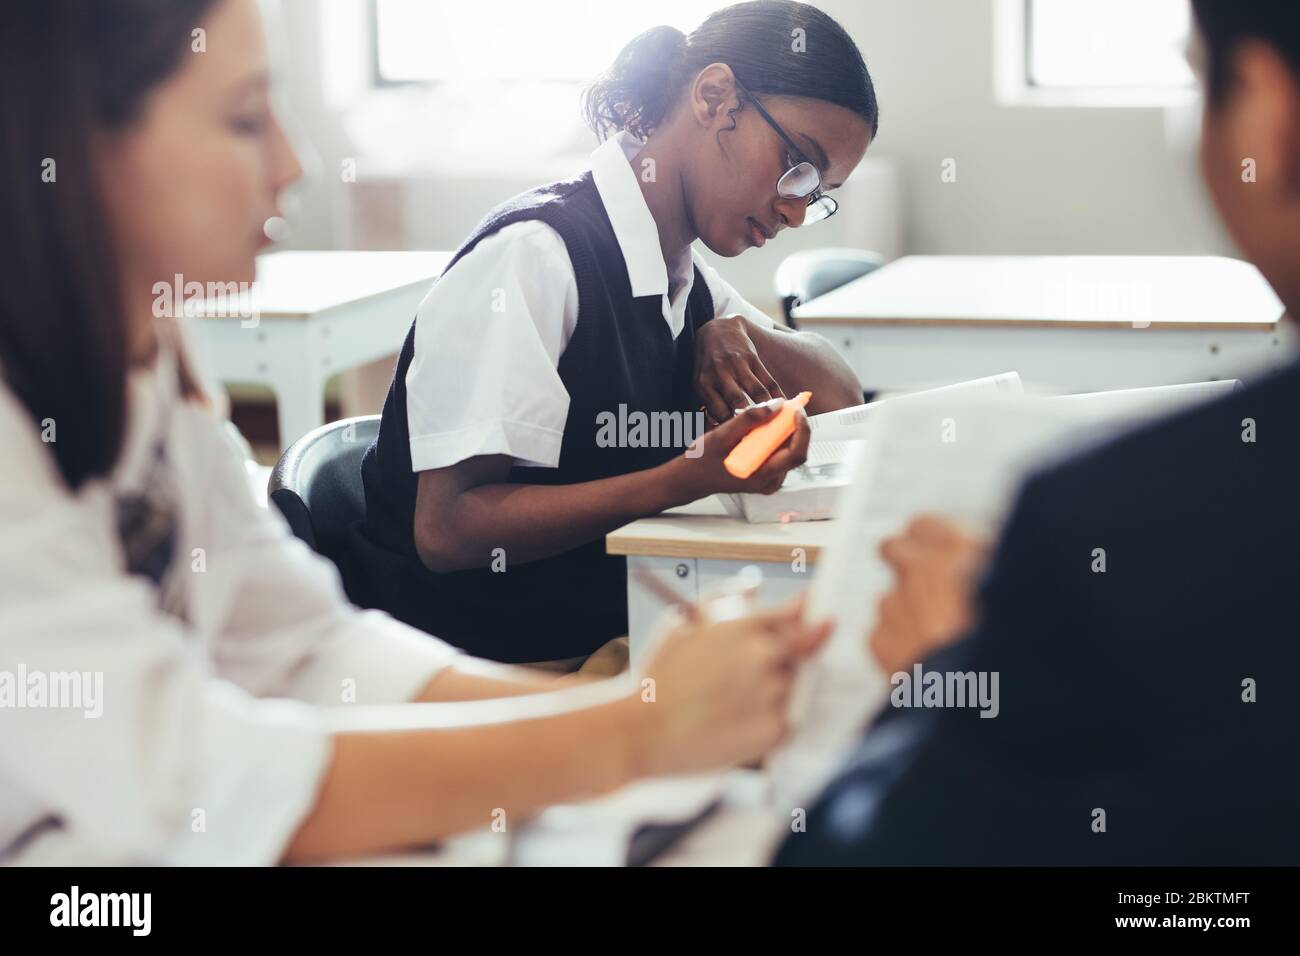 Studenti delle scuole superiori che indossano un'uniforme seduta alla scrivania in classe. Studentessa studentesca in classe con un compagno di classe che discute davanti. Foto Stock